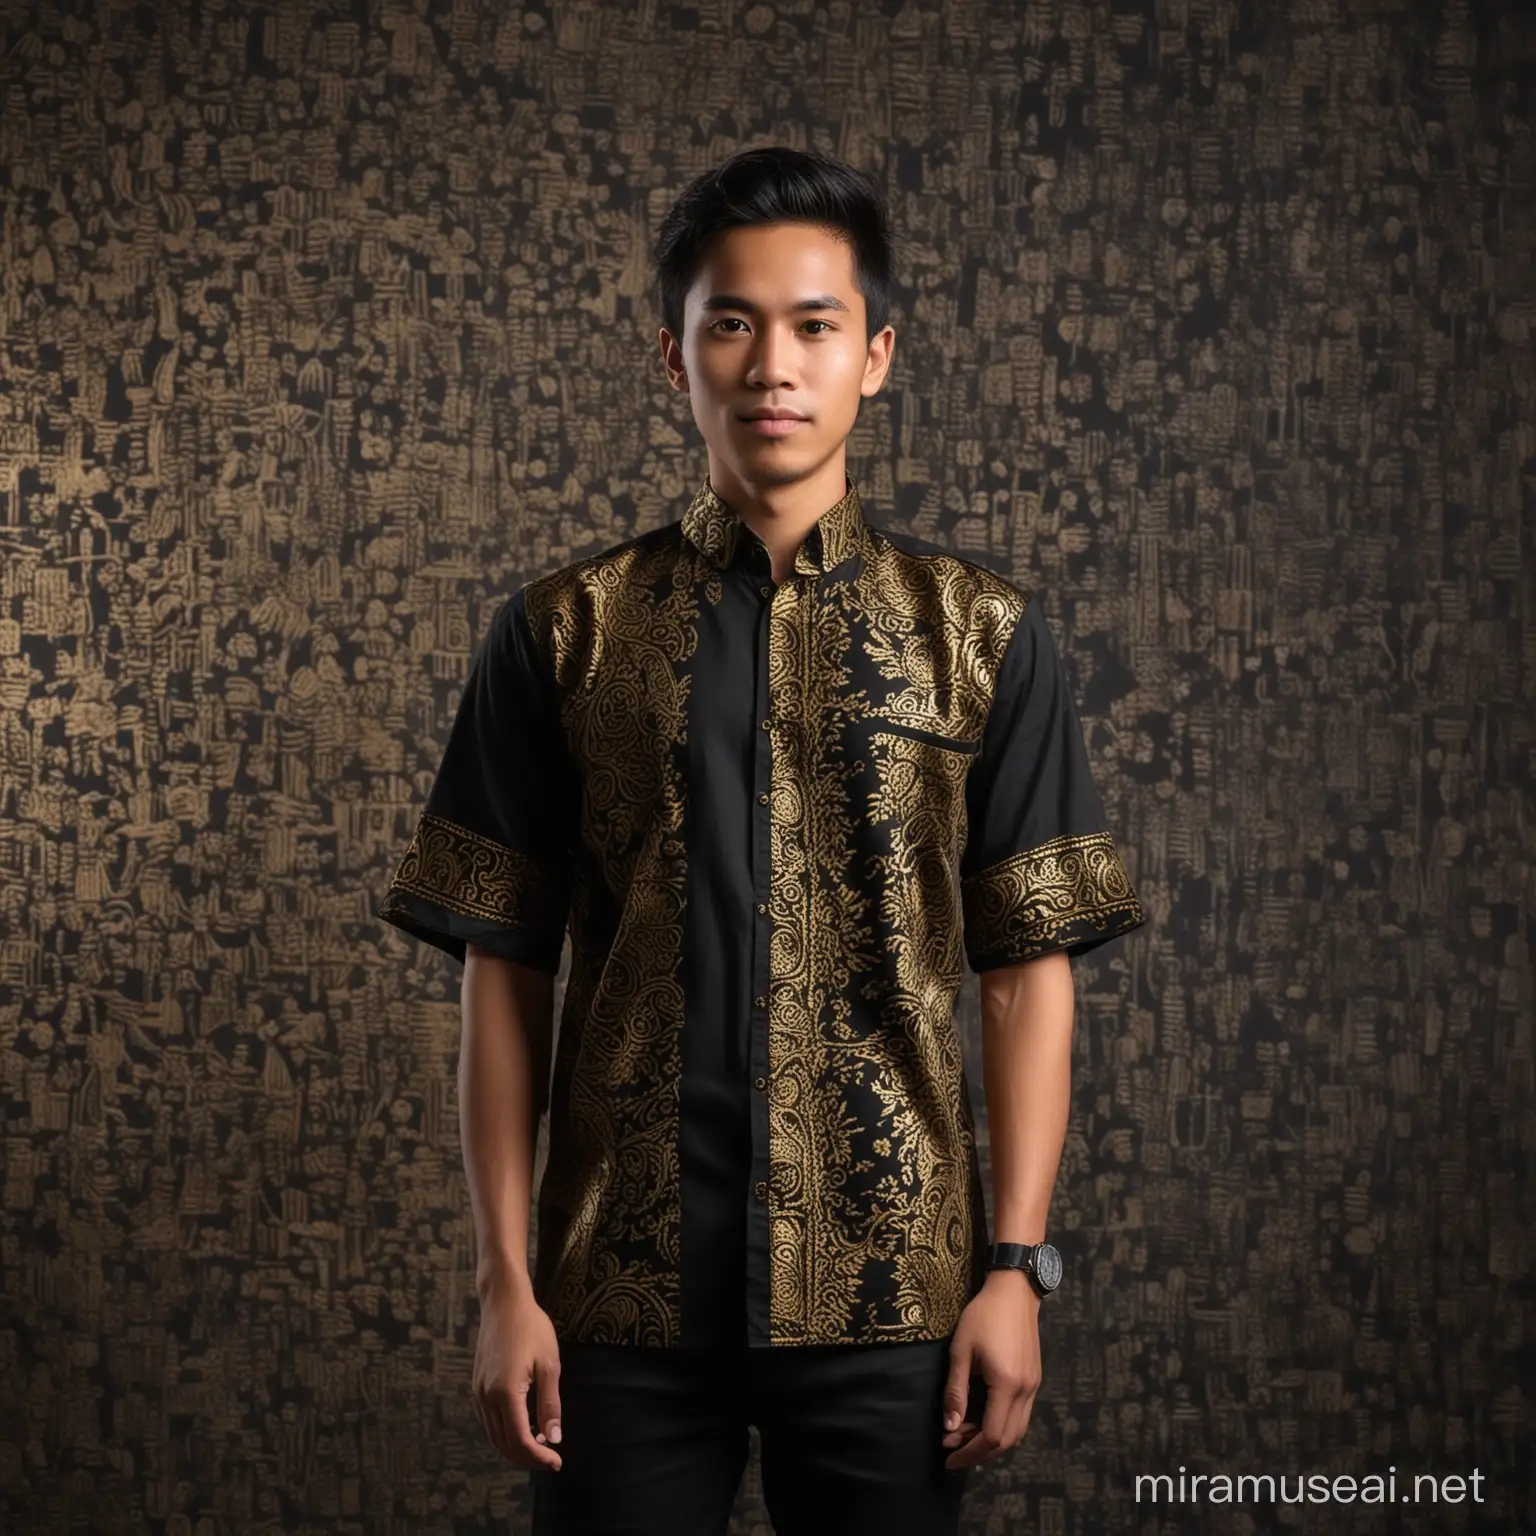 Seorang pria muda belia, wajah indonesia, memakai baju hitam batik emas,memakai songkok, baiground layar hitam foto studio,
Full body